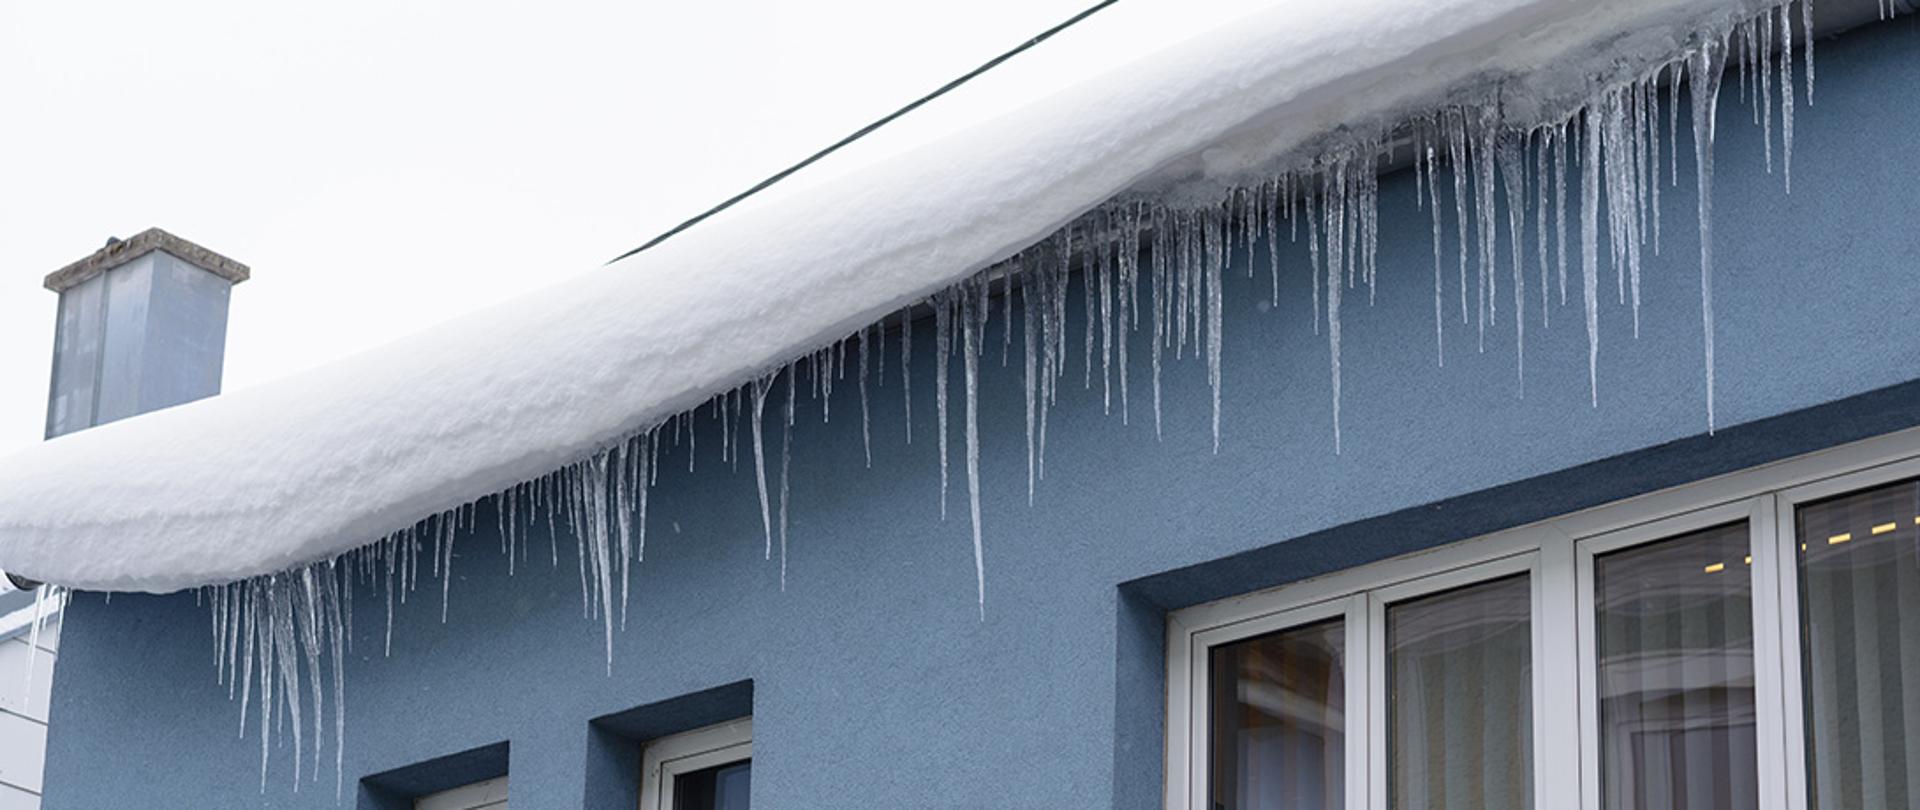 Śnieg na dachu i zwisające sople lodu.